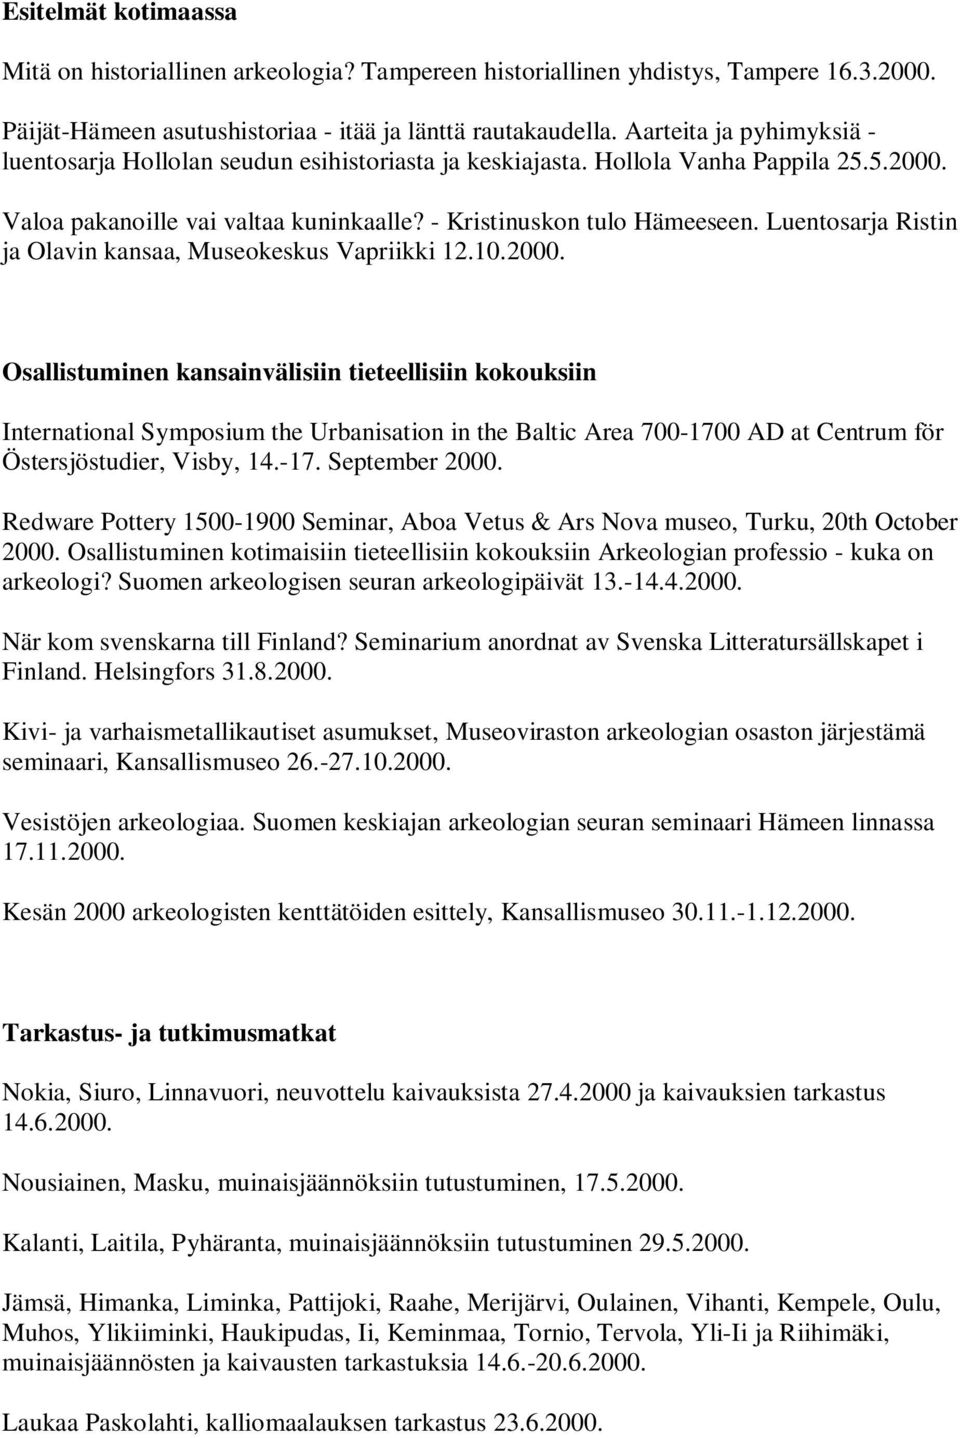 Luentosarja Ristin ja Olavin kansaa, Museokeskus Vapriikki 12.10.2000.